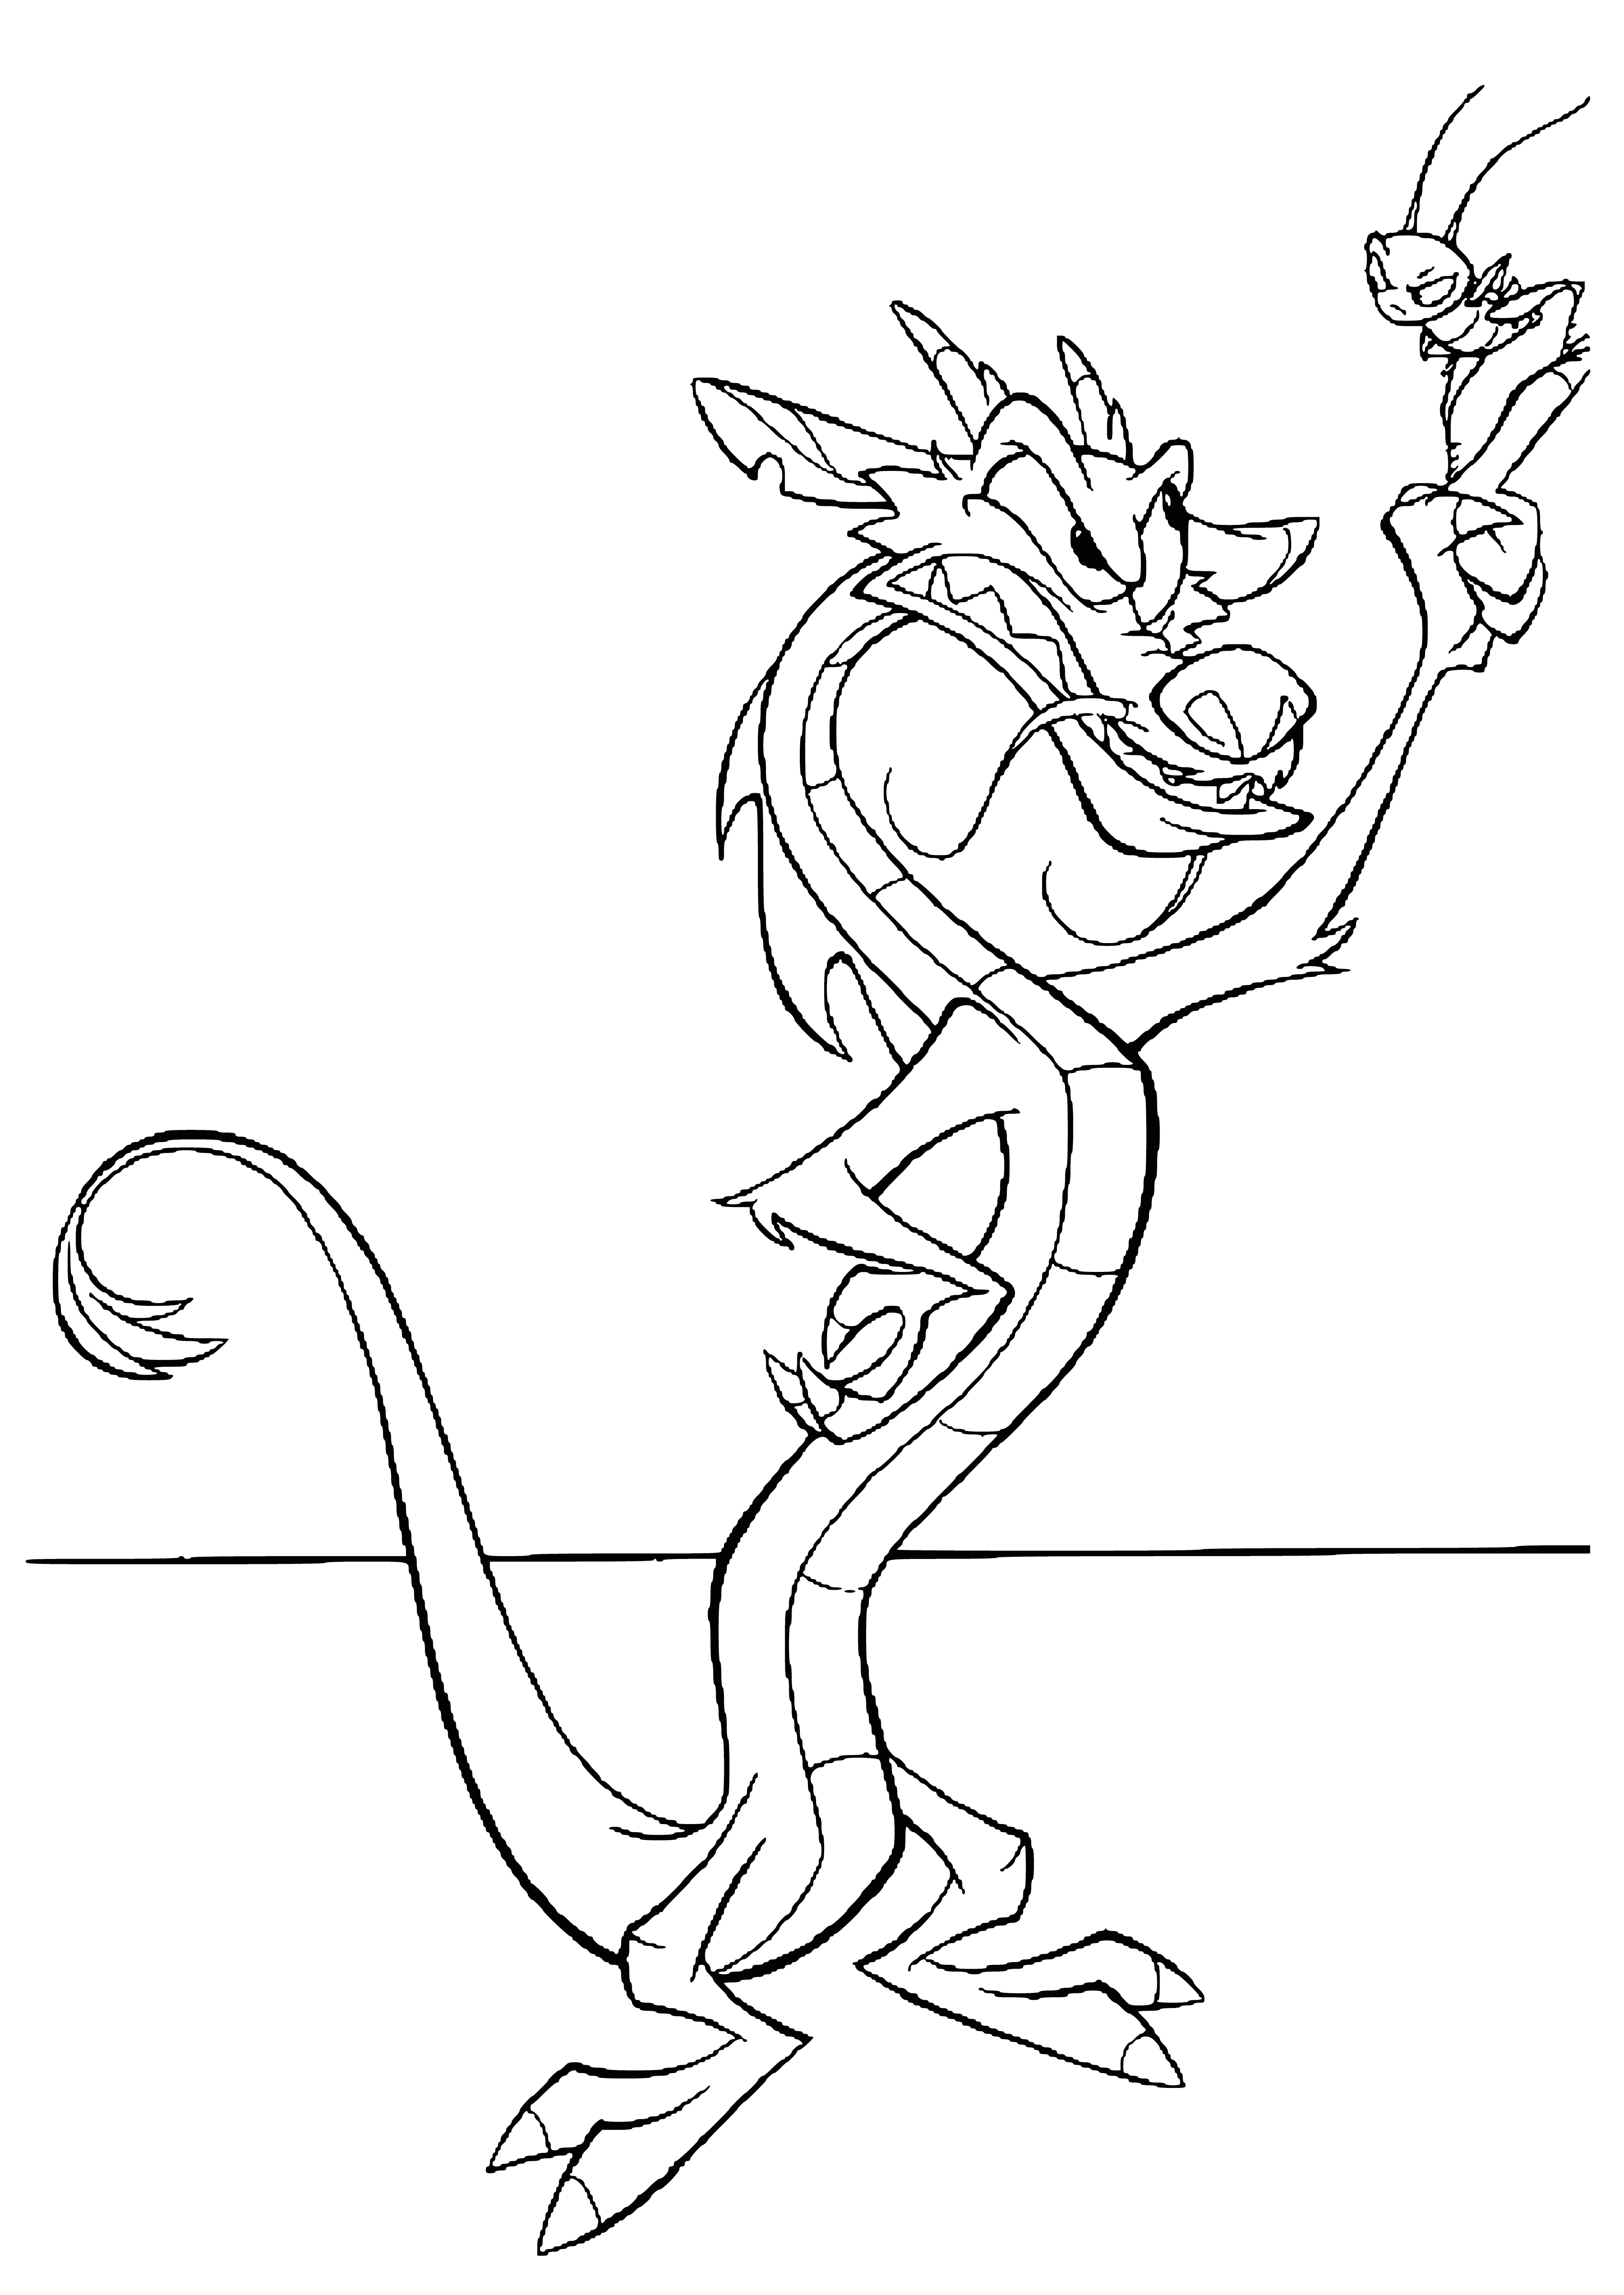 Dragon Mushu and cricket coloring page